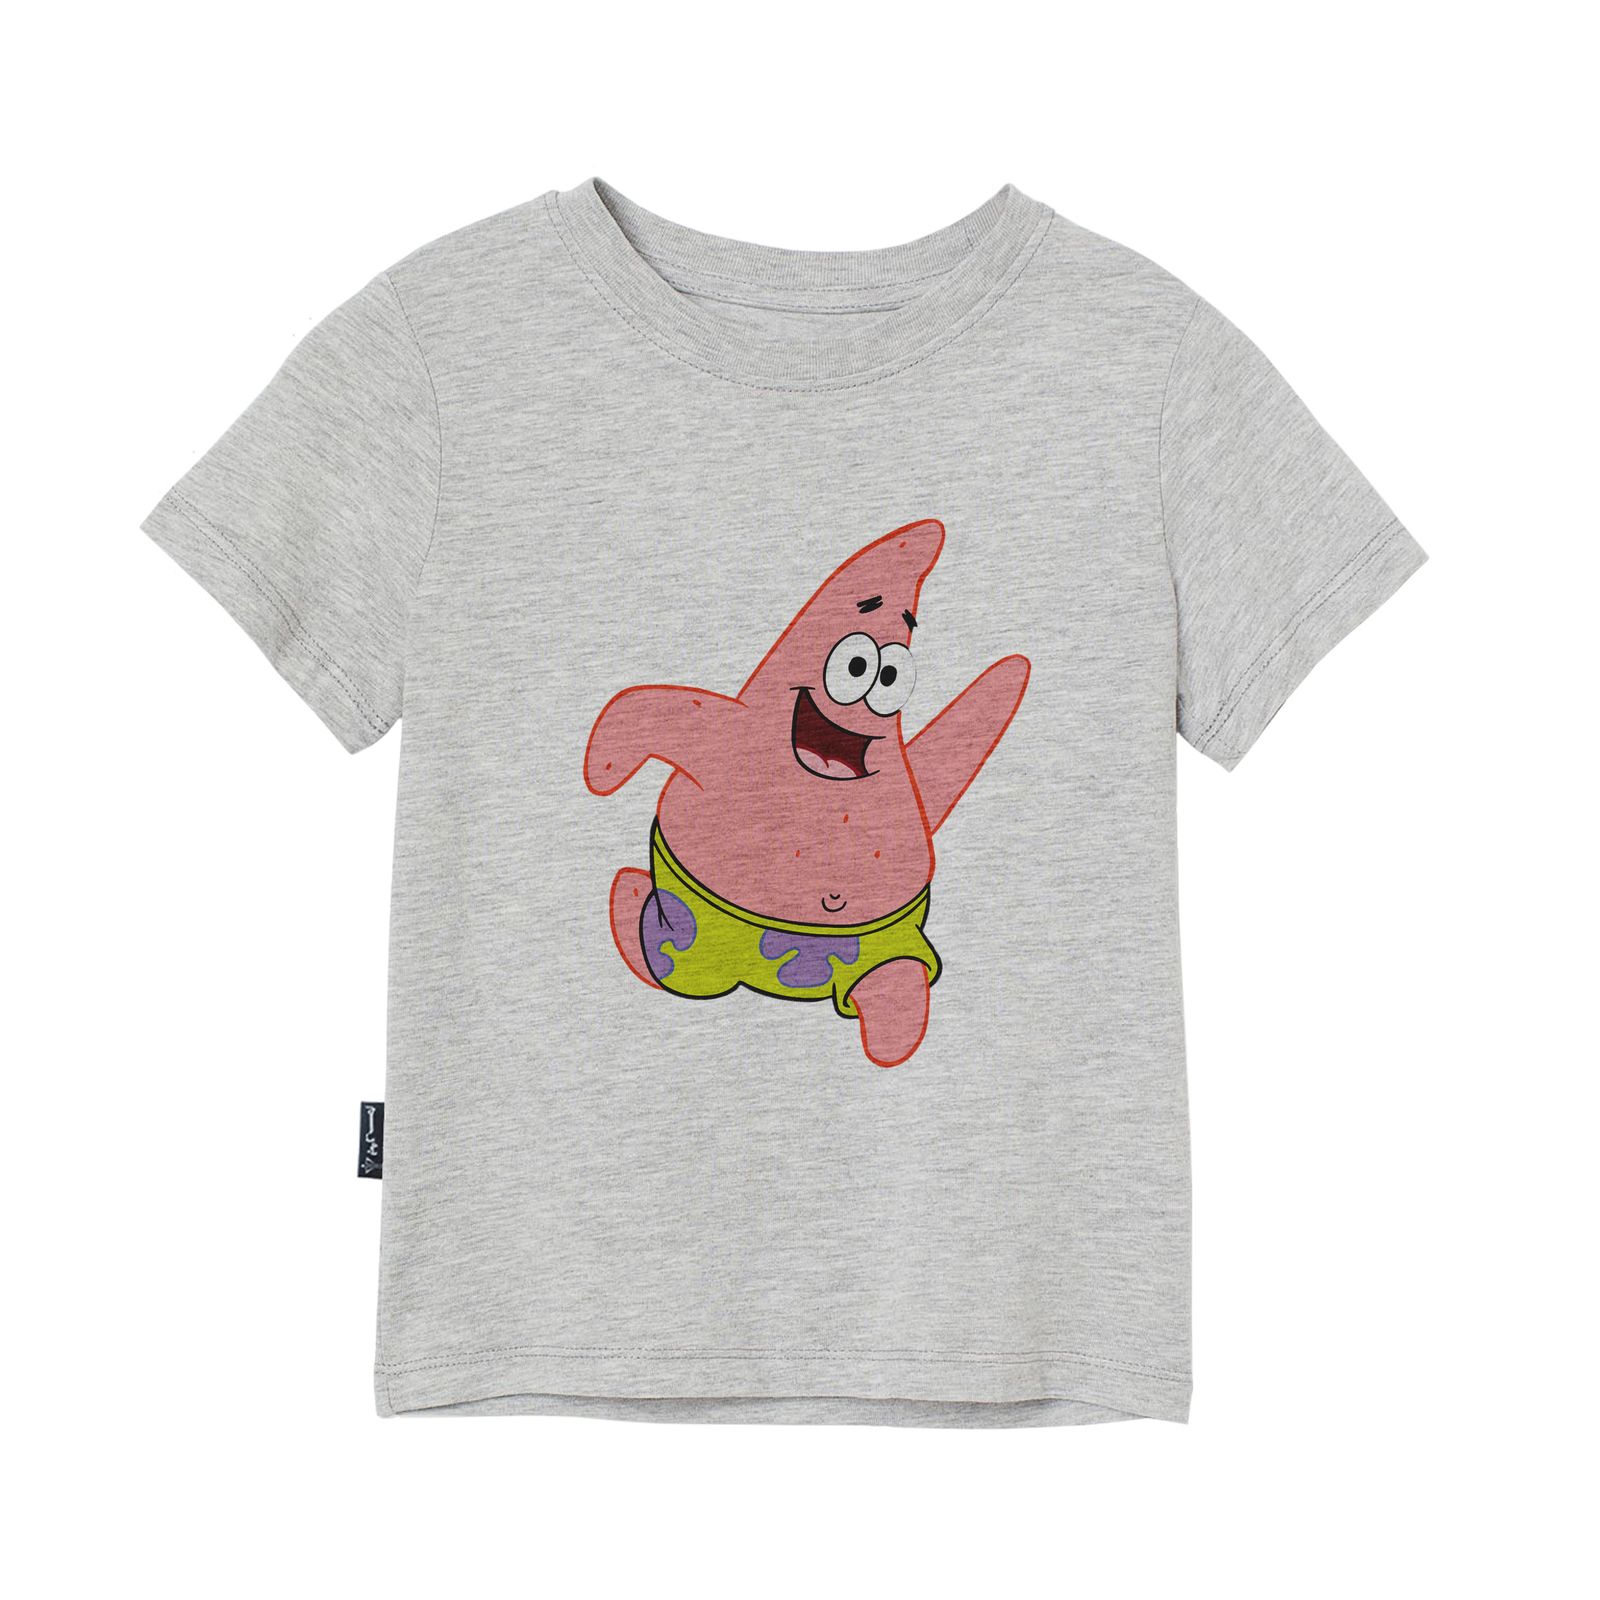 تی شرت آستین کوتاه دخترانه به رسم مدل پاتریک کد 110022 -  - 1